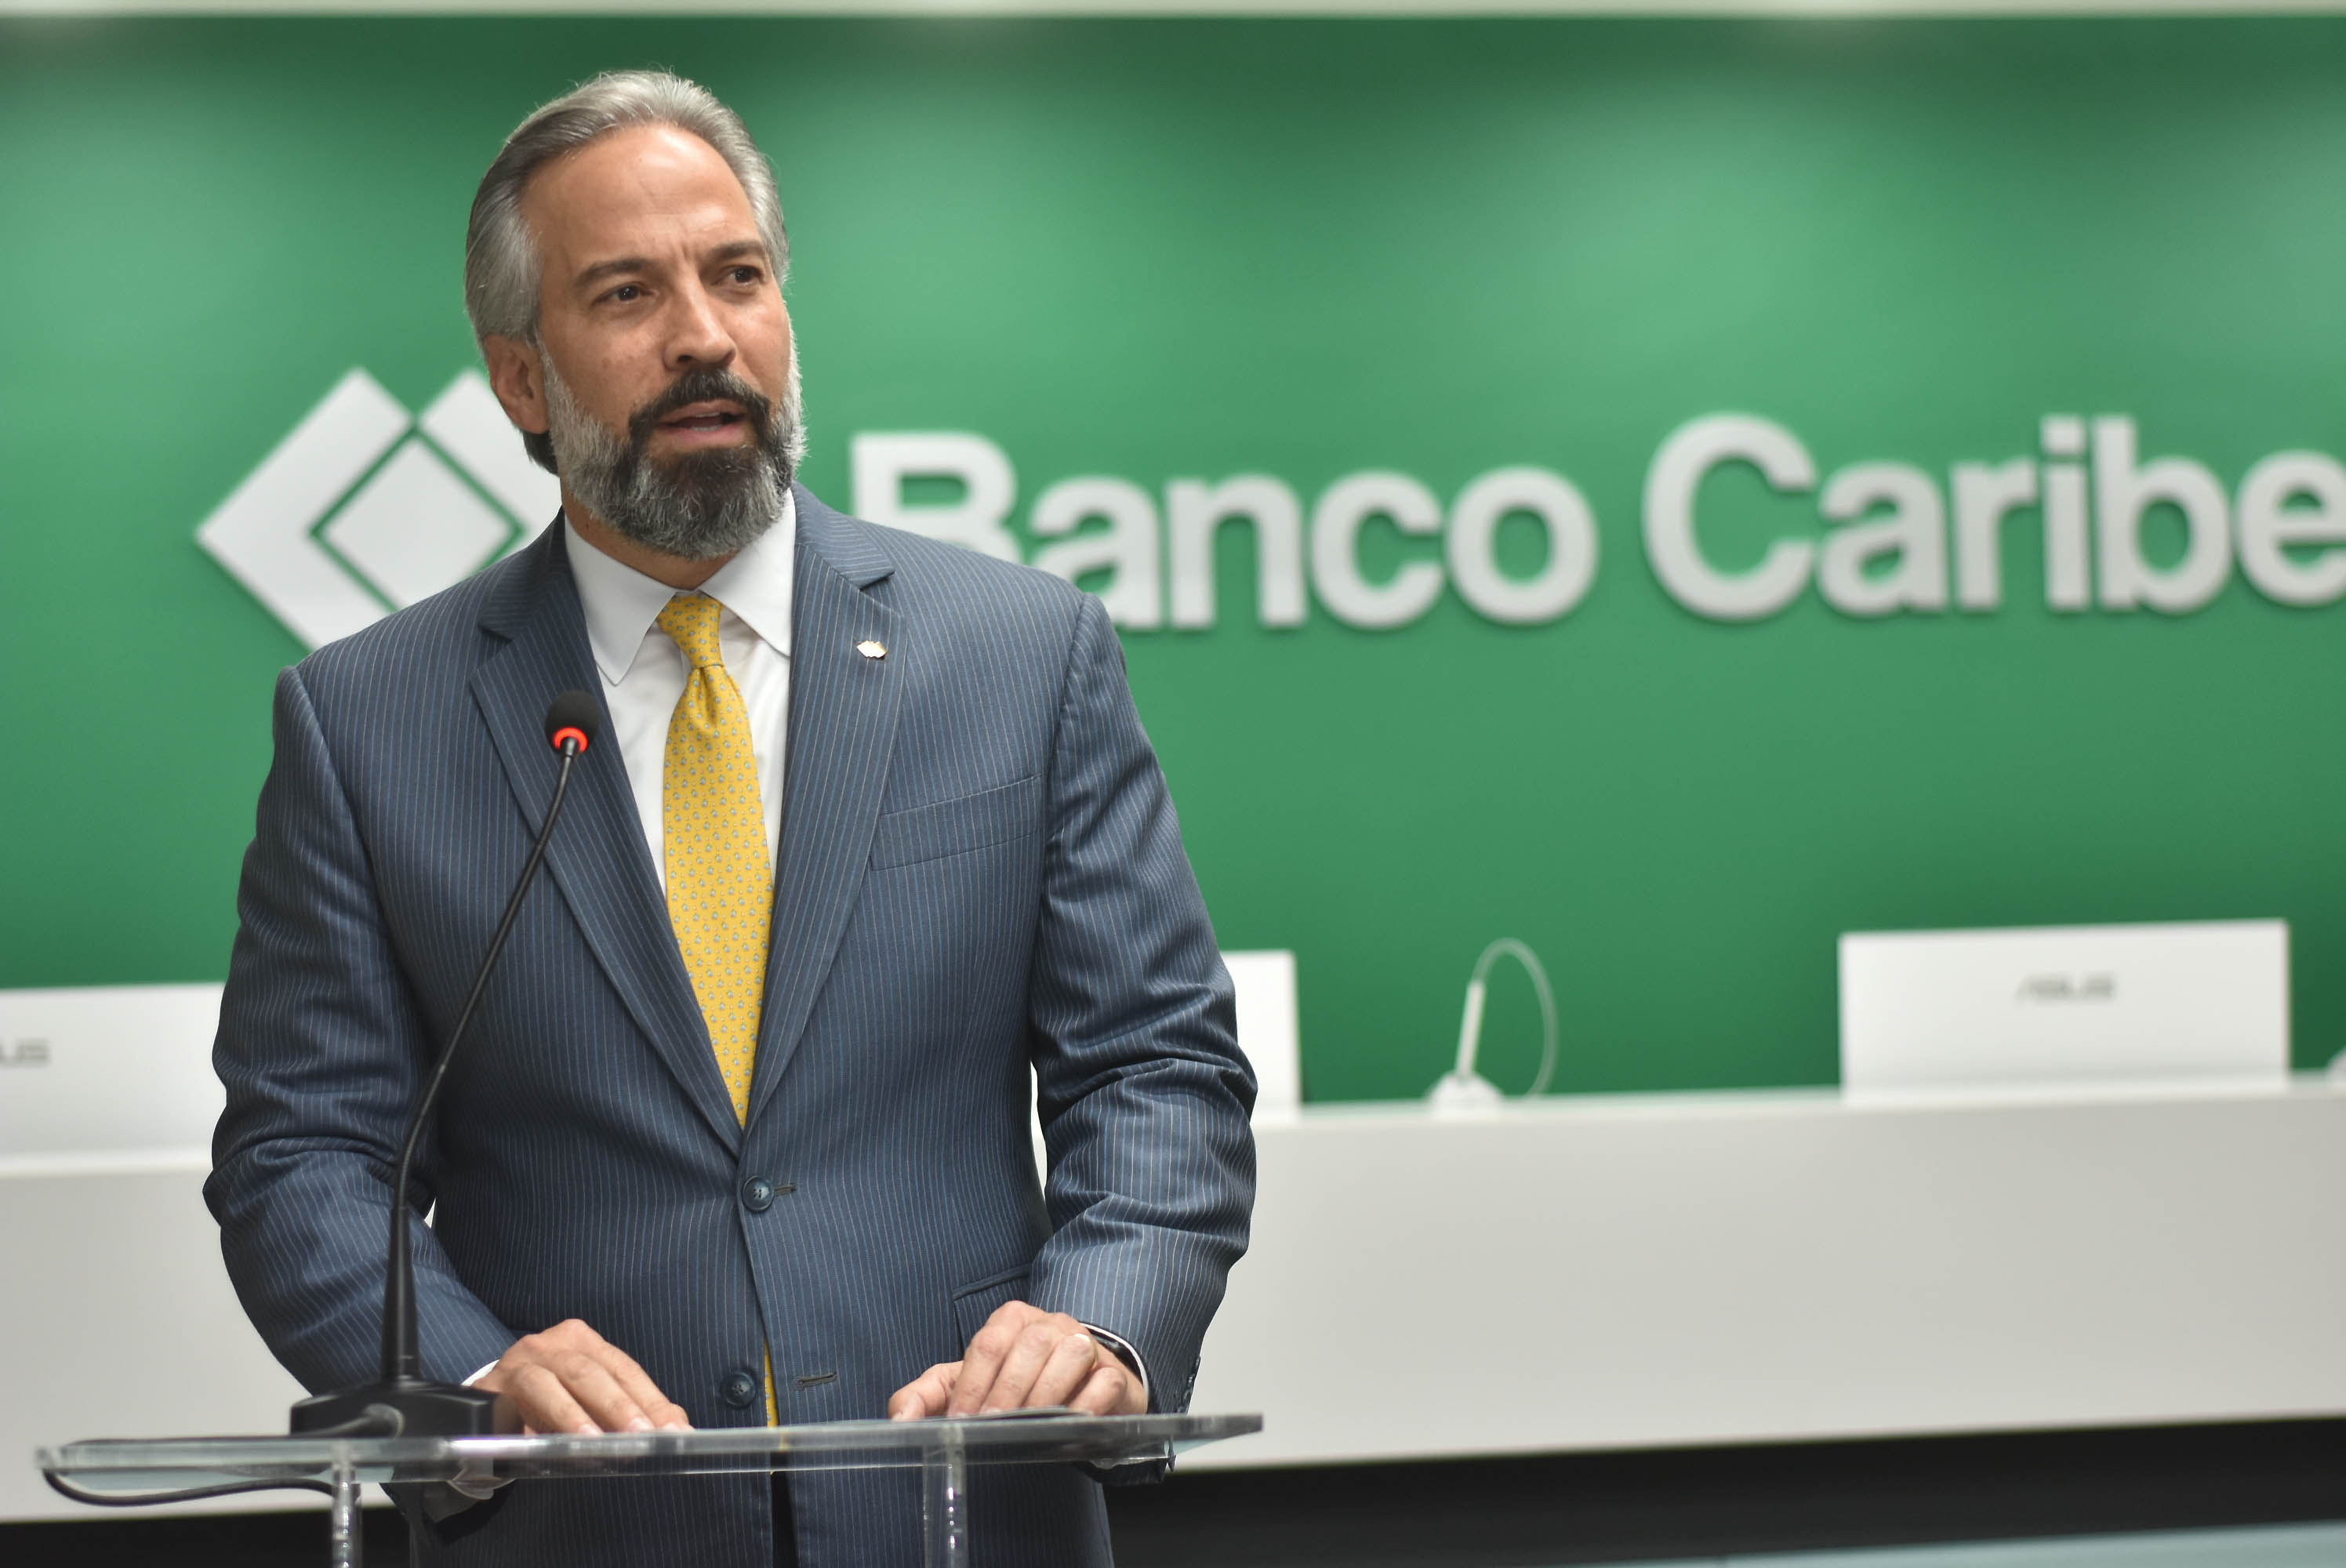 Imagen Banco Caribe presenta resultados financieros al 31 de diciembre 2020